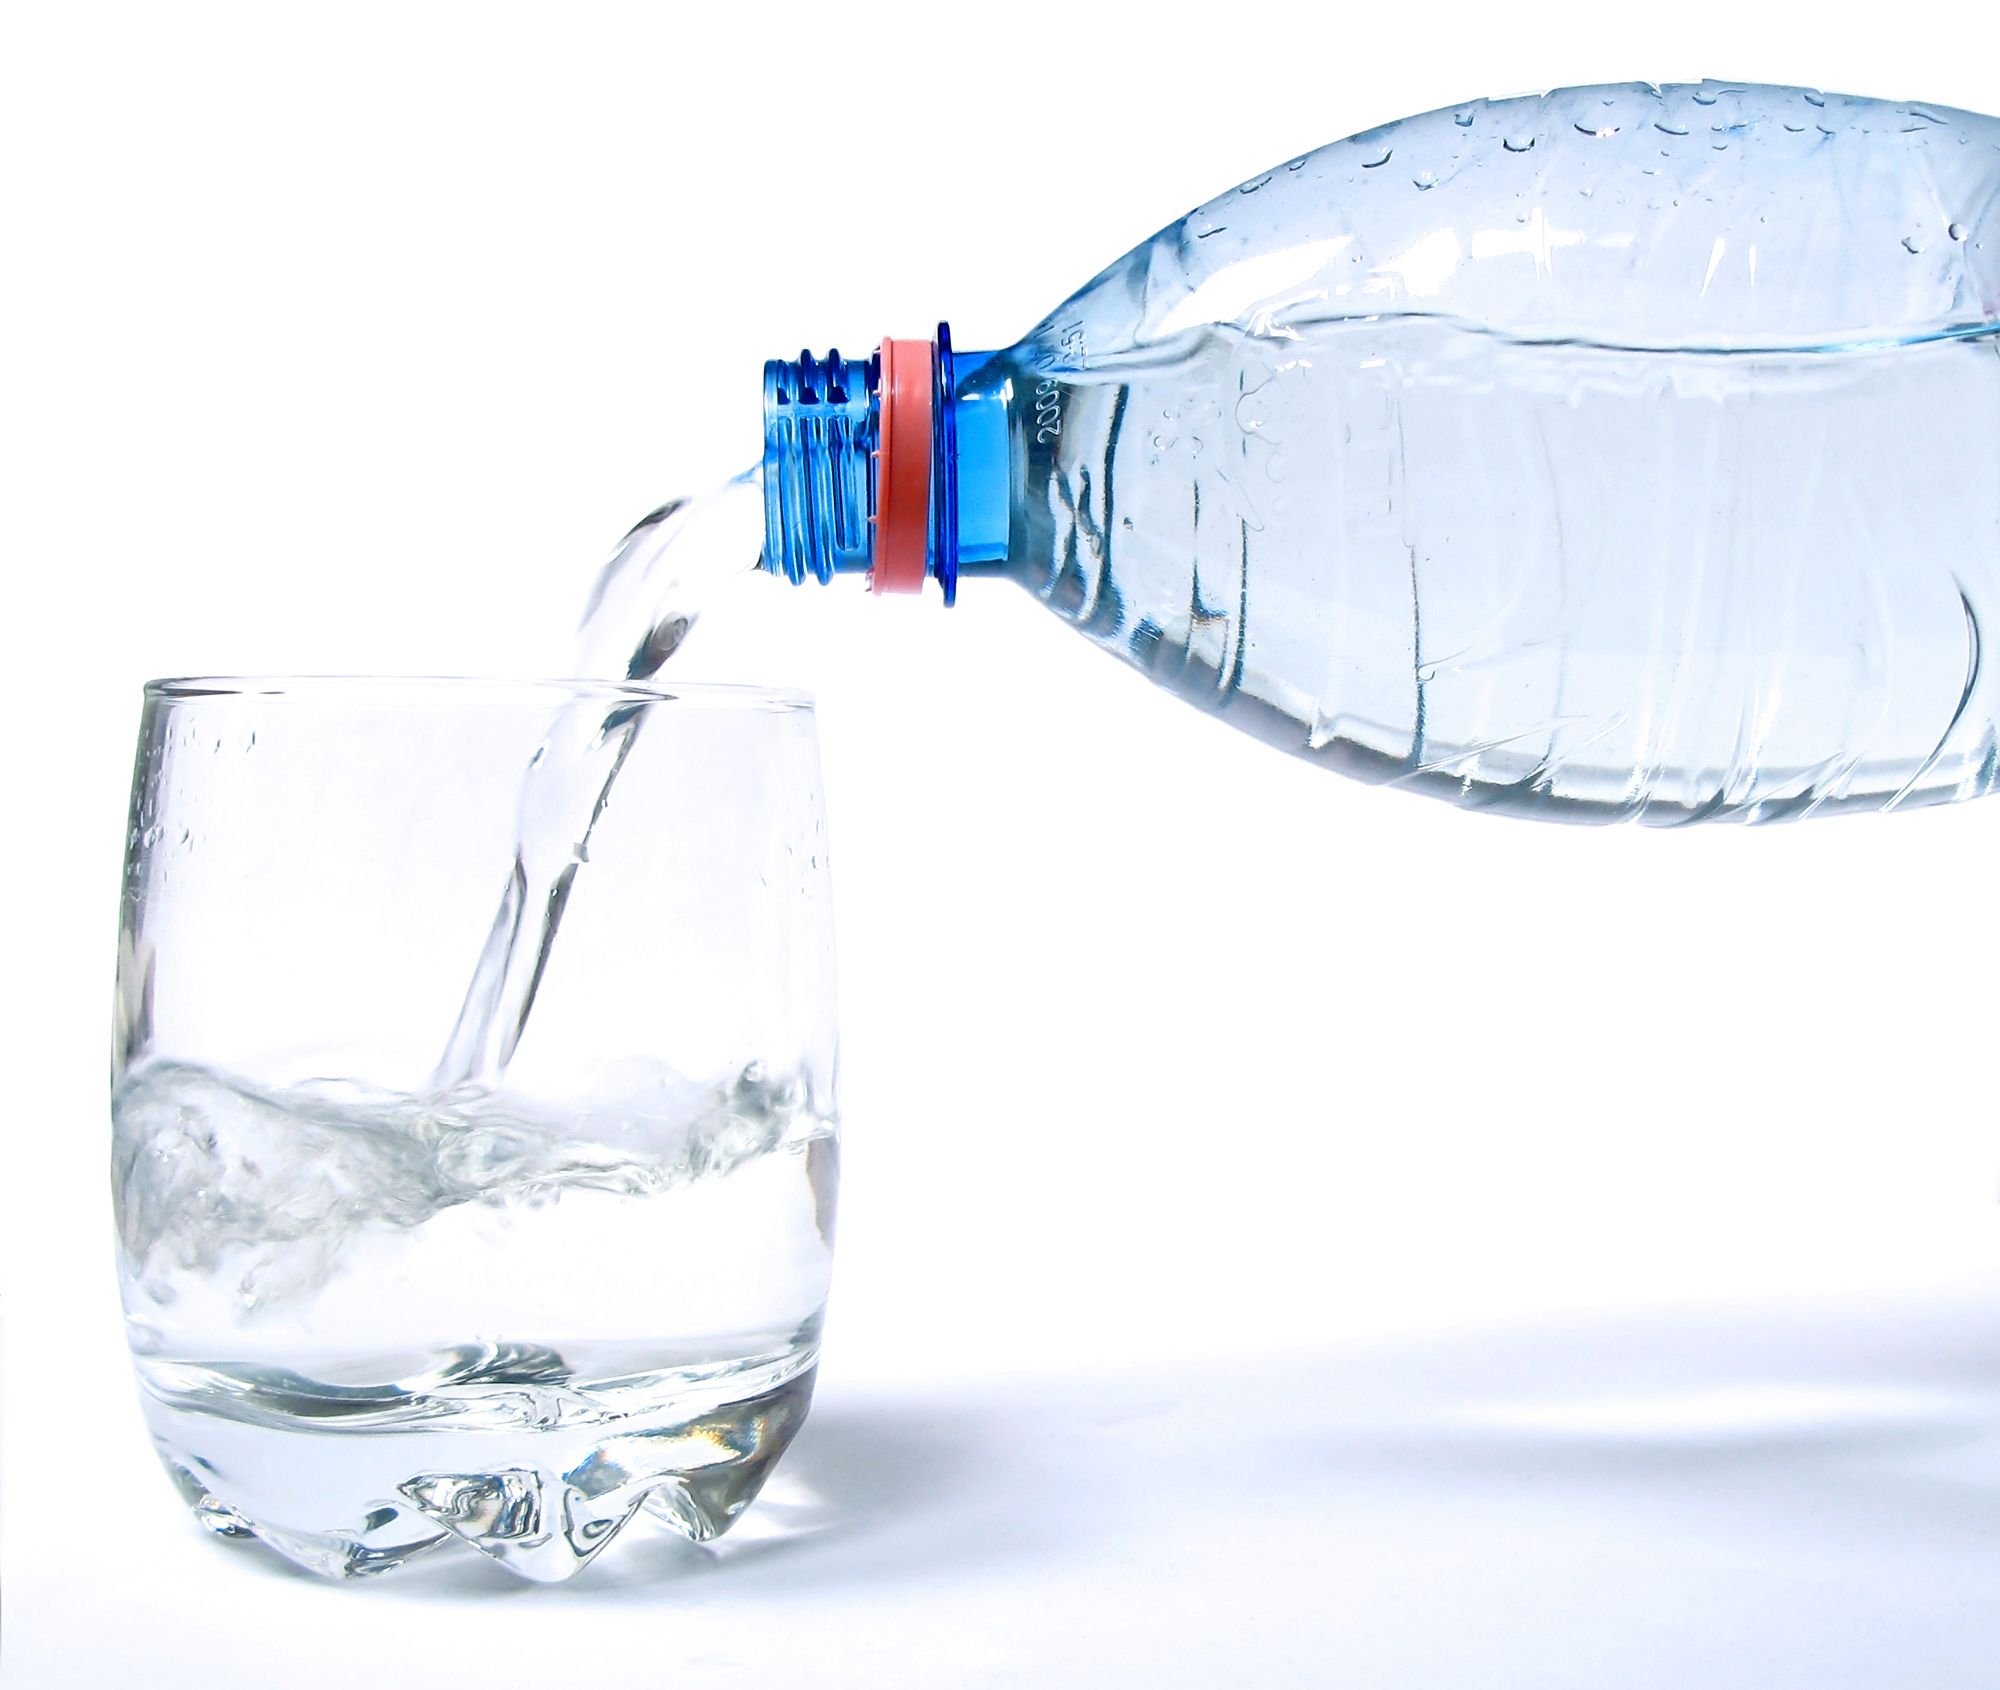 ΠΑΚΟΕ: Ερευνα για το τι νερό καταναλώνουμε